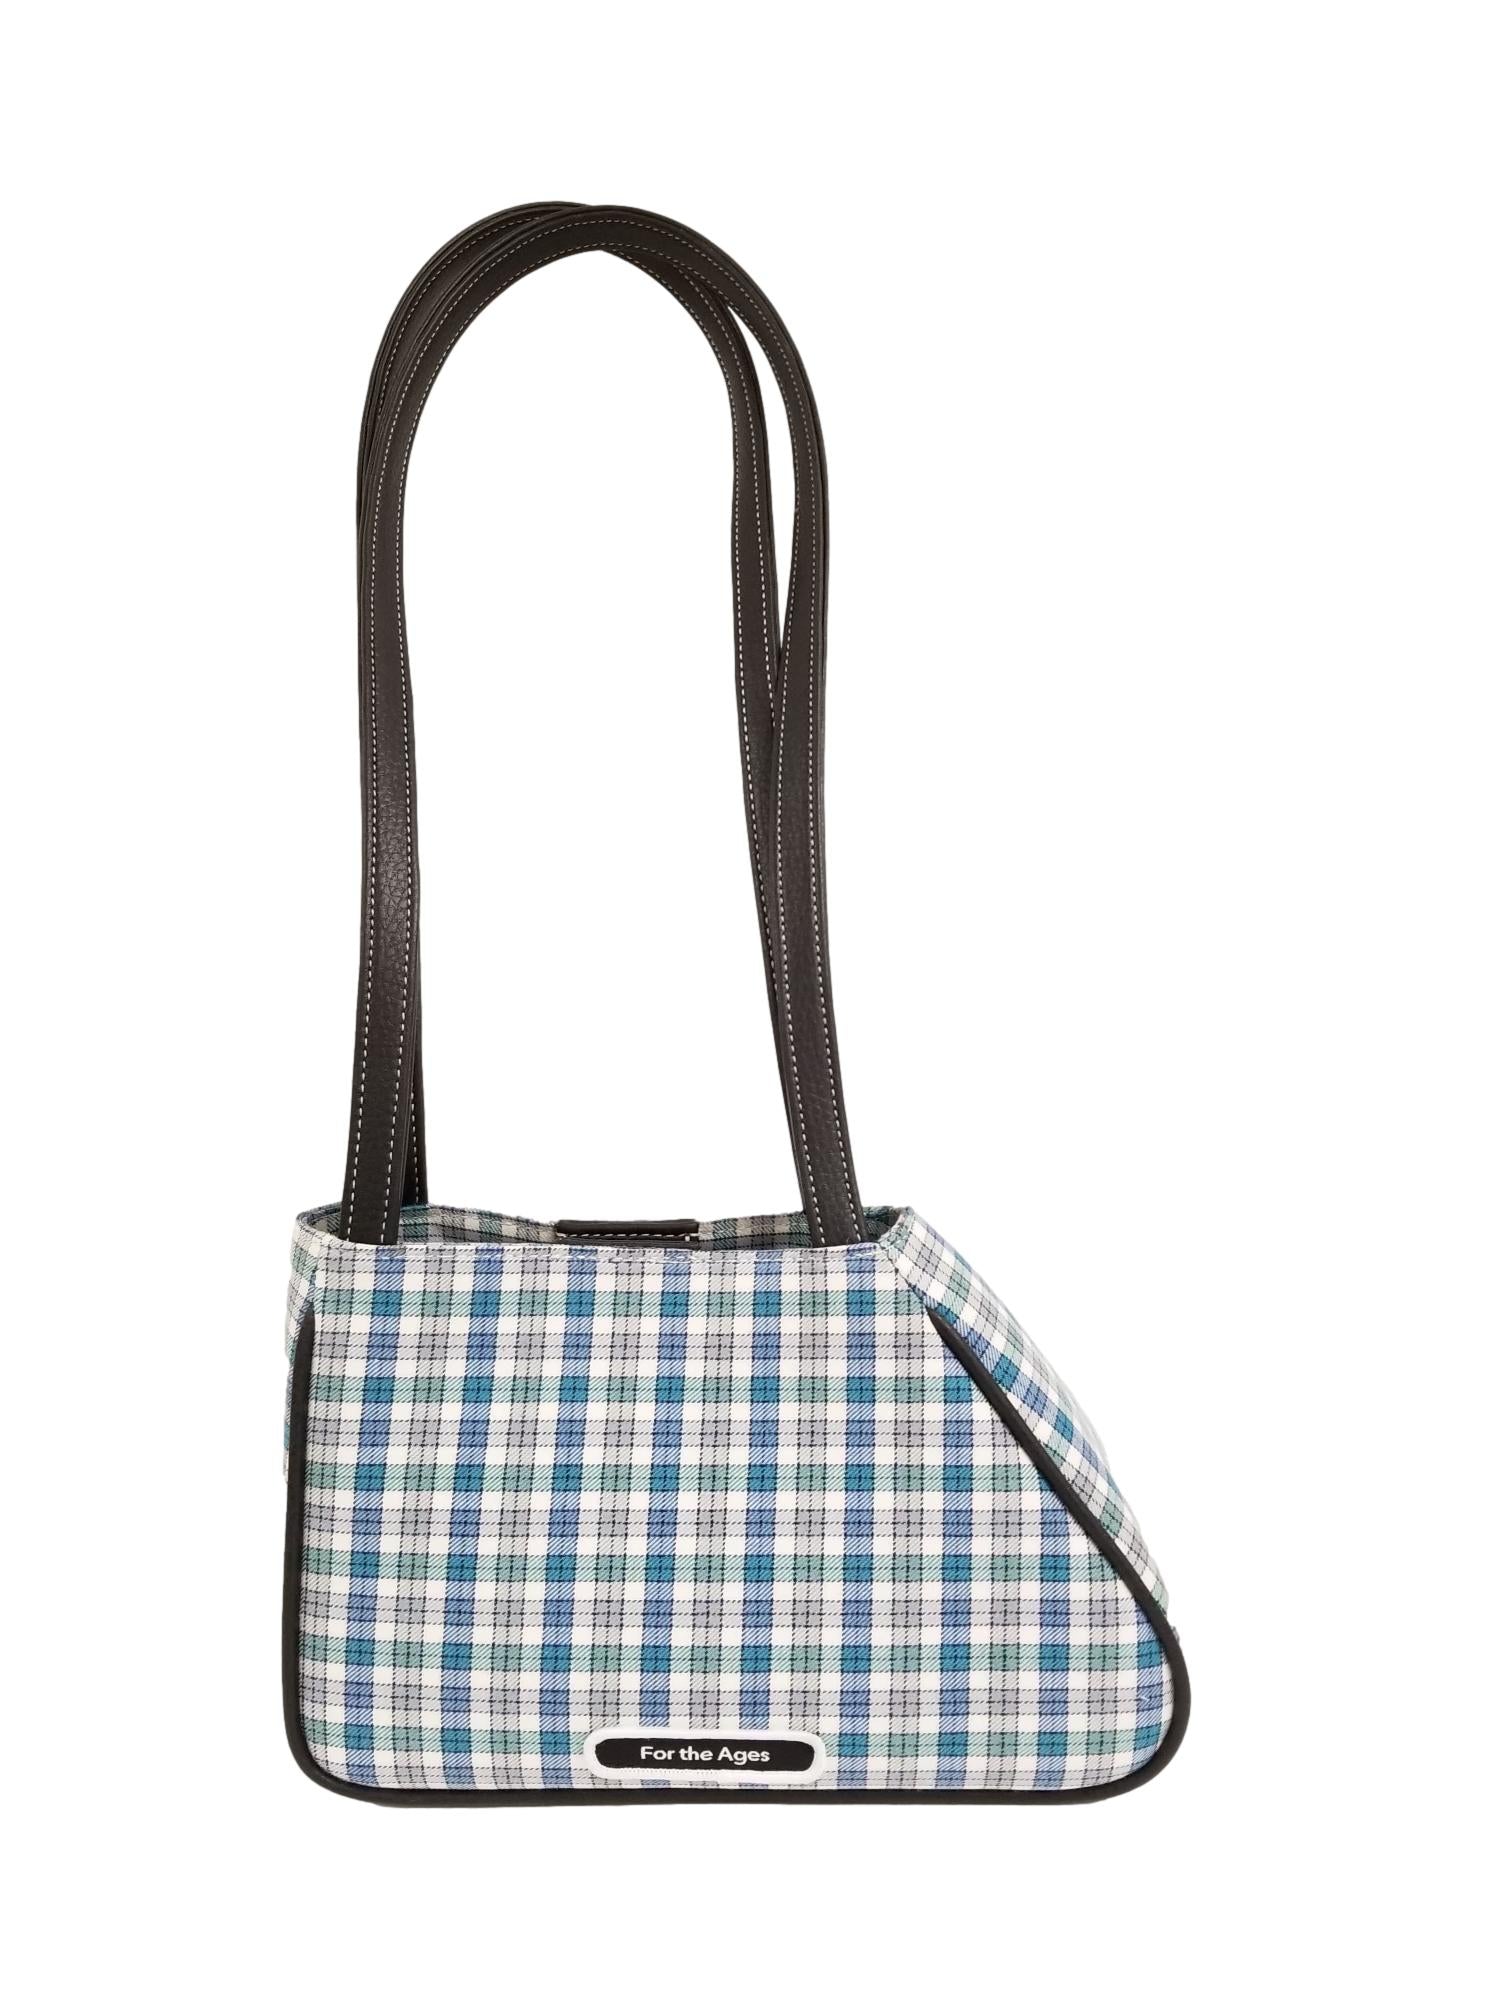 Checkered Shoulder Bag, Bag Cotton Checkered, Checkered Tote Bag